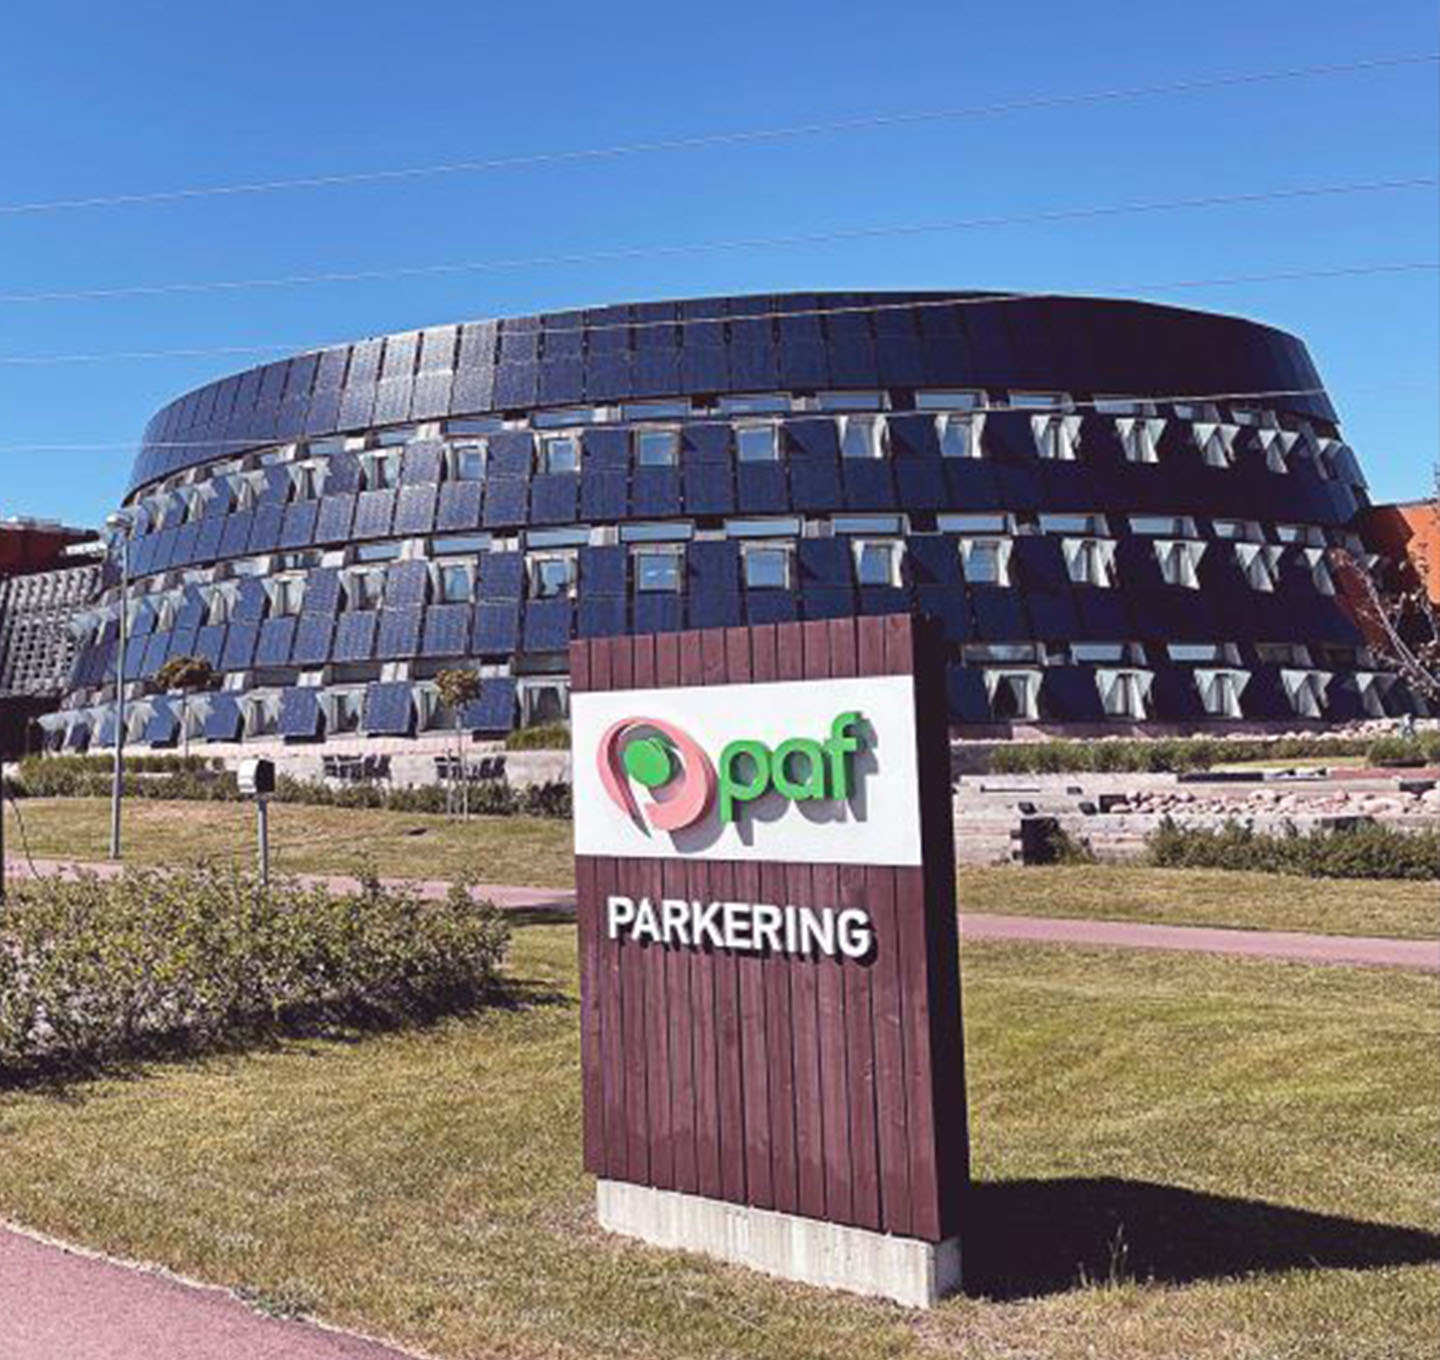 Sede central del casino Paf en Aland, Finlandia